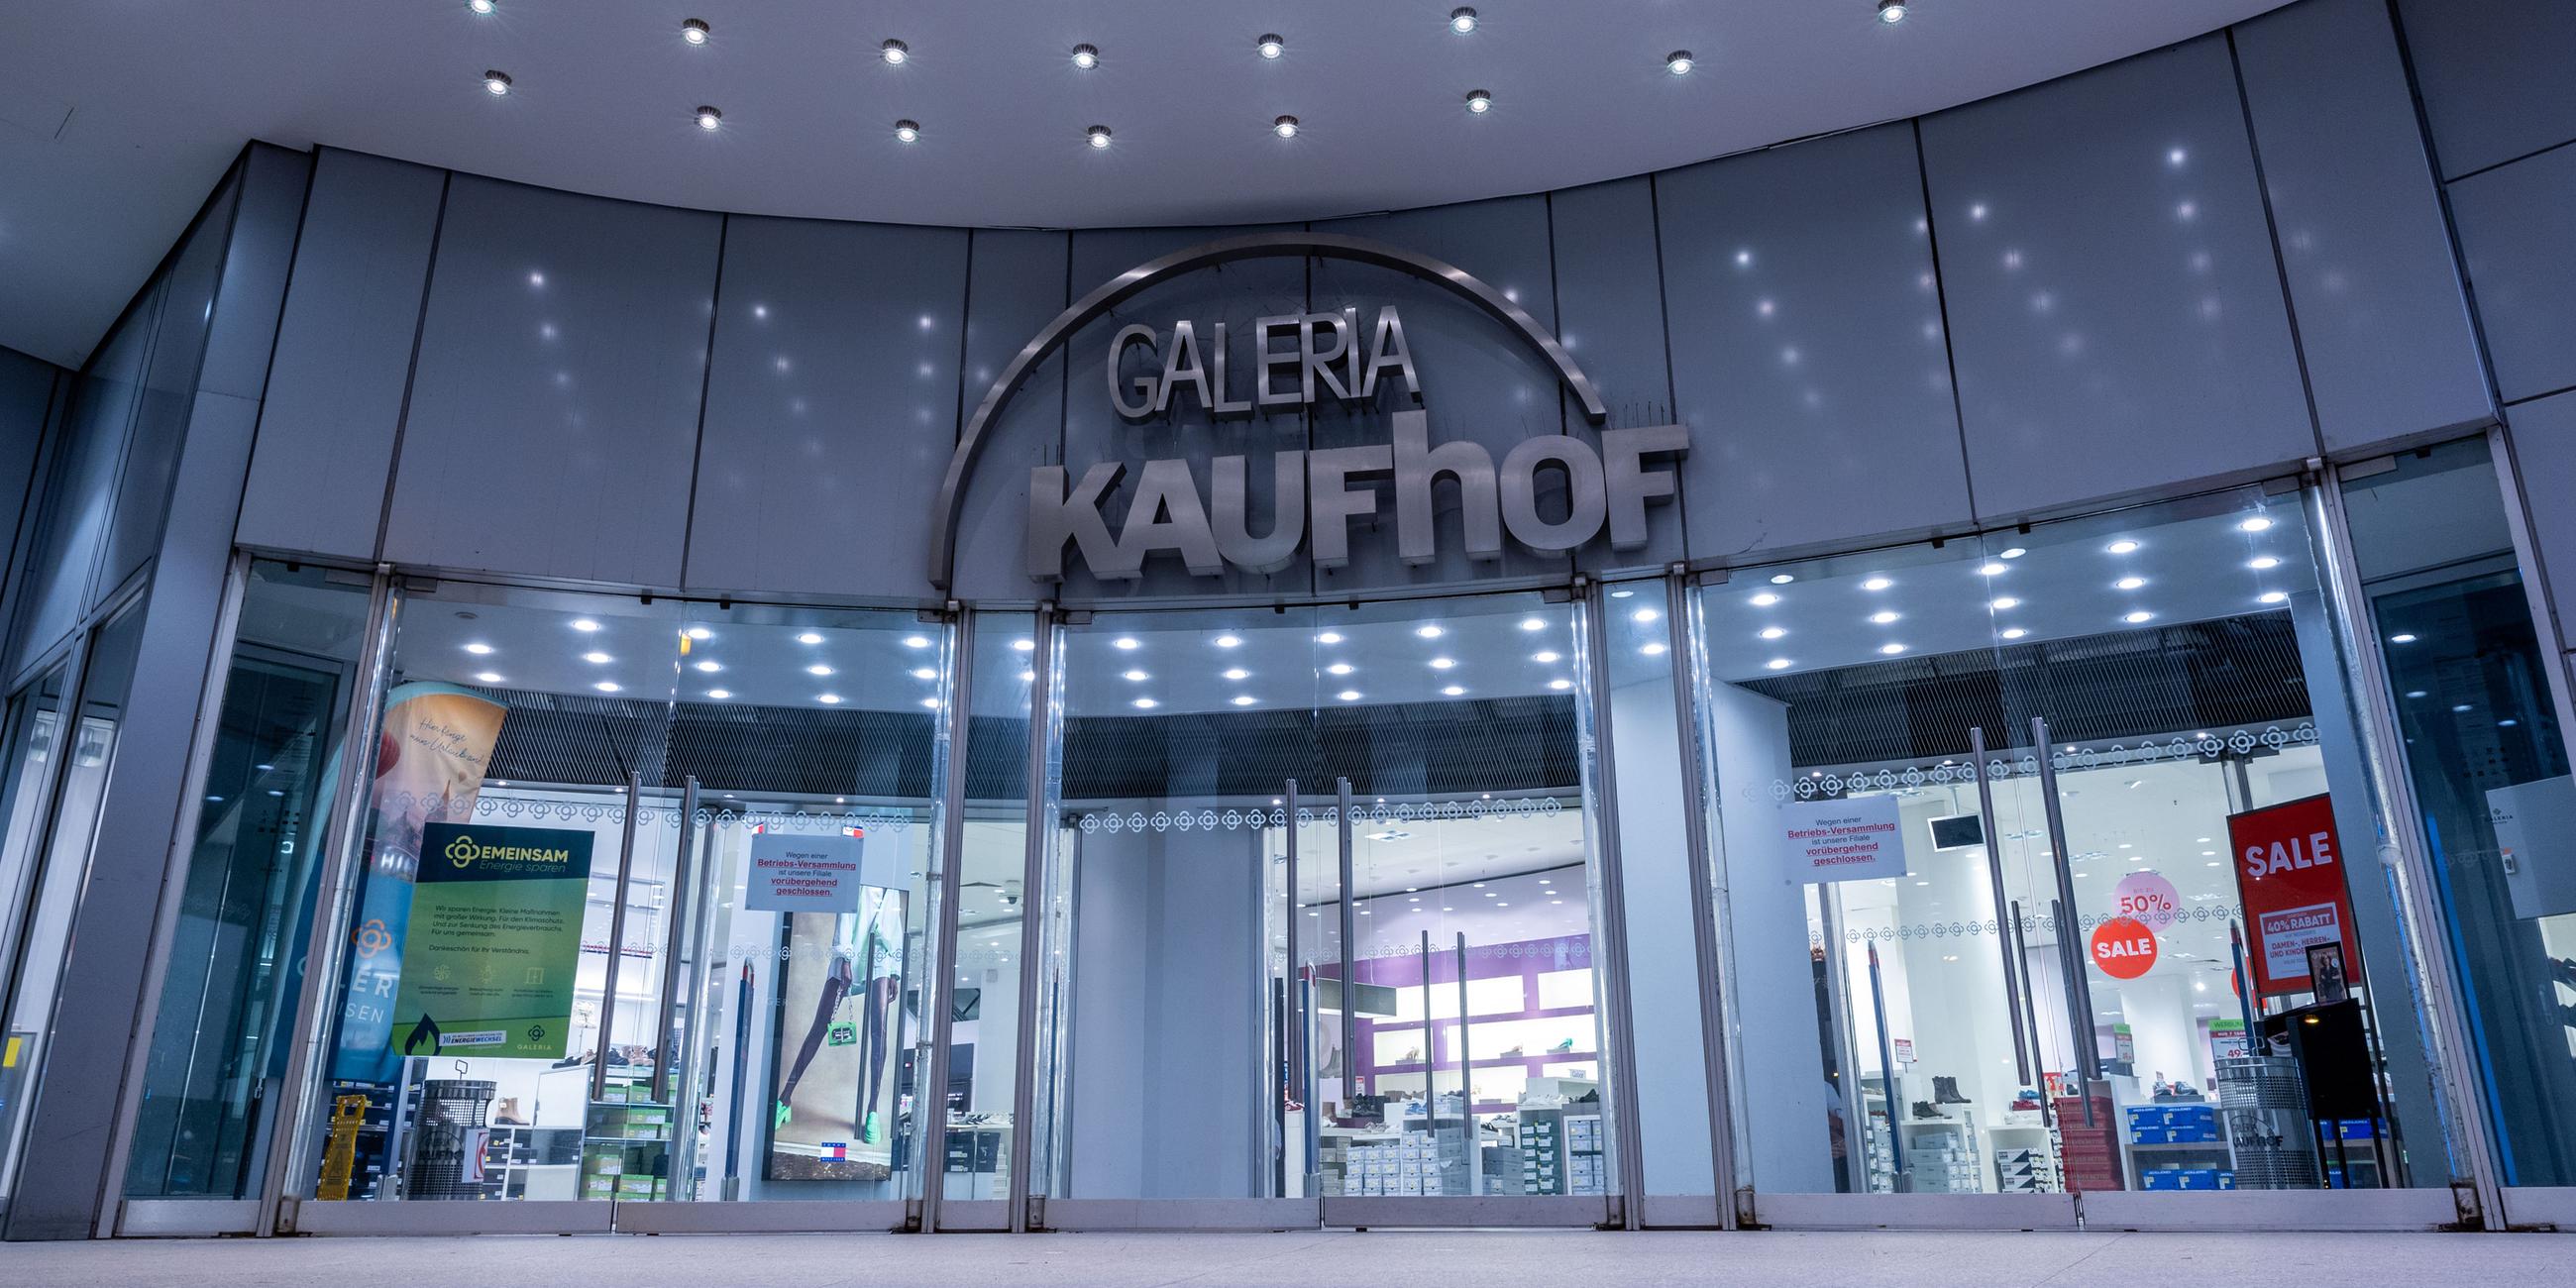 Mecklenburg-Vorpommern, Rostock: Der Haupteingang der geschlossenen Filiale von Galeria-Kaufhof.